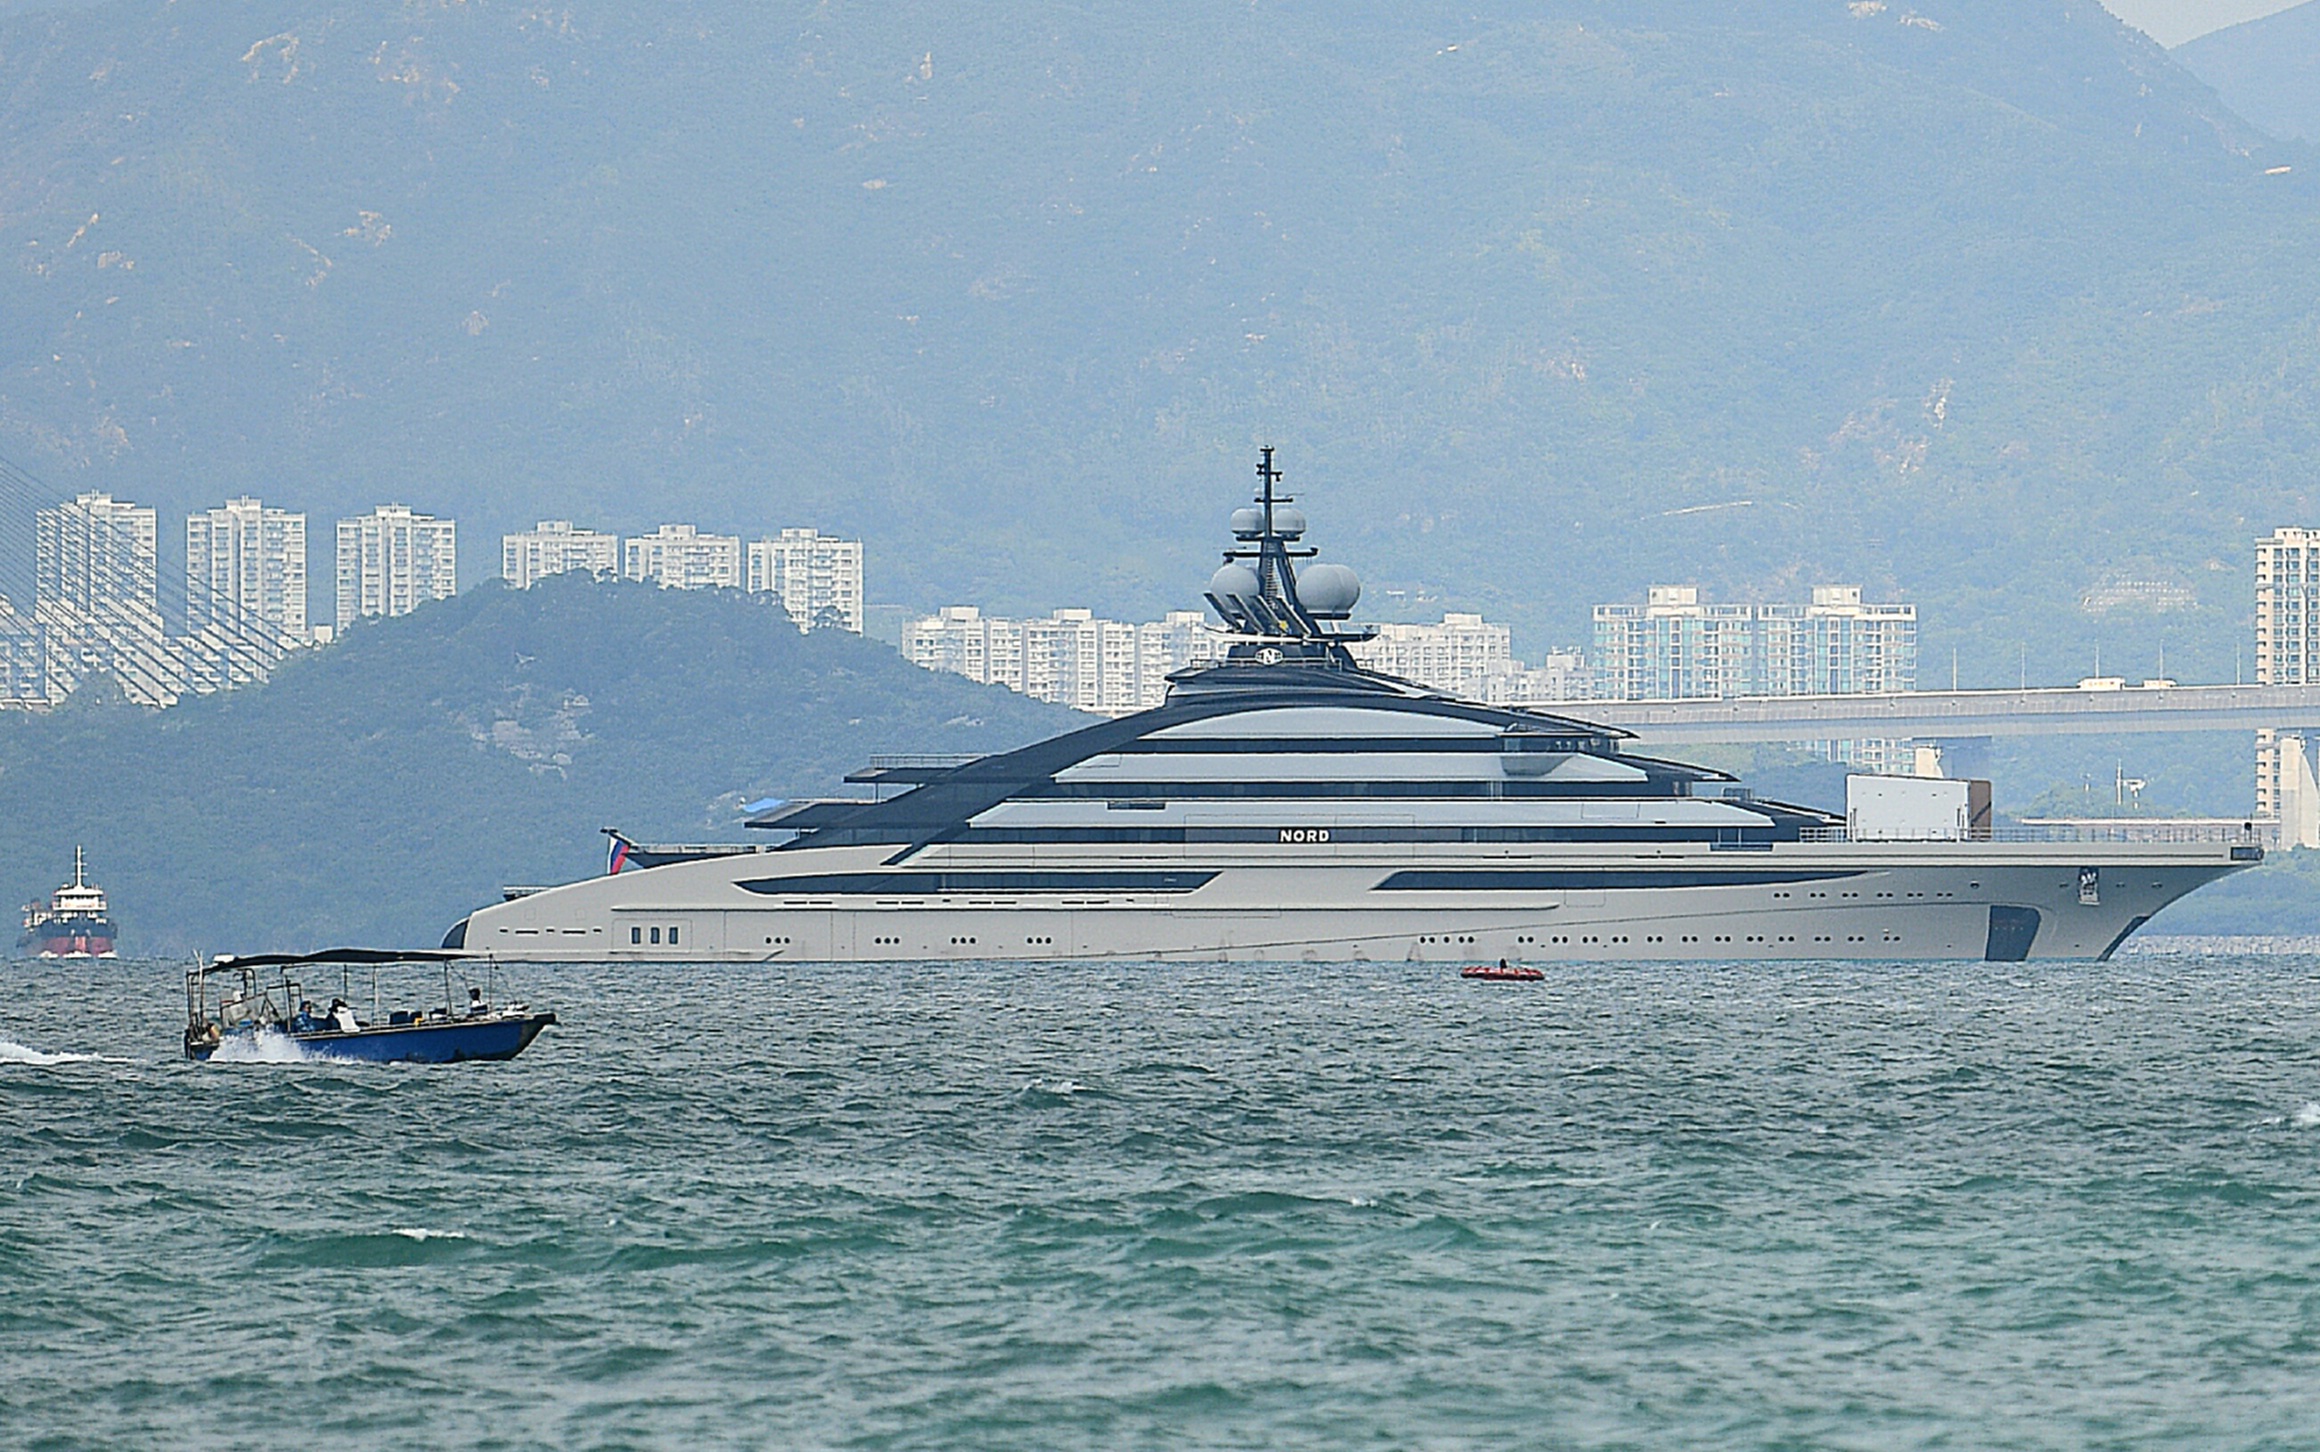 Mỹ cảnh báo siêu du thuyền của nhà tài phiệt Nga bị trừng phạt đang trú ẩn ở Hồng Kông